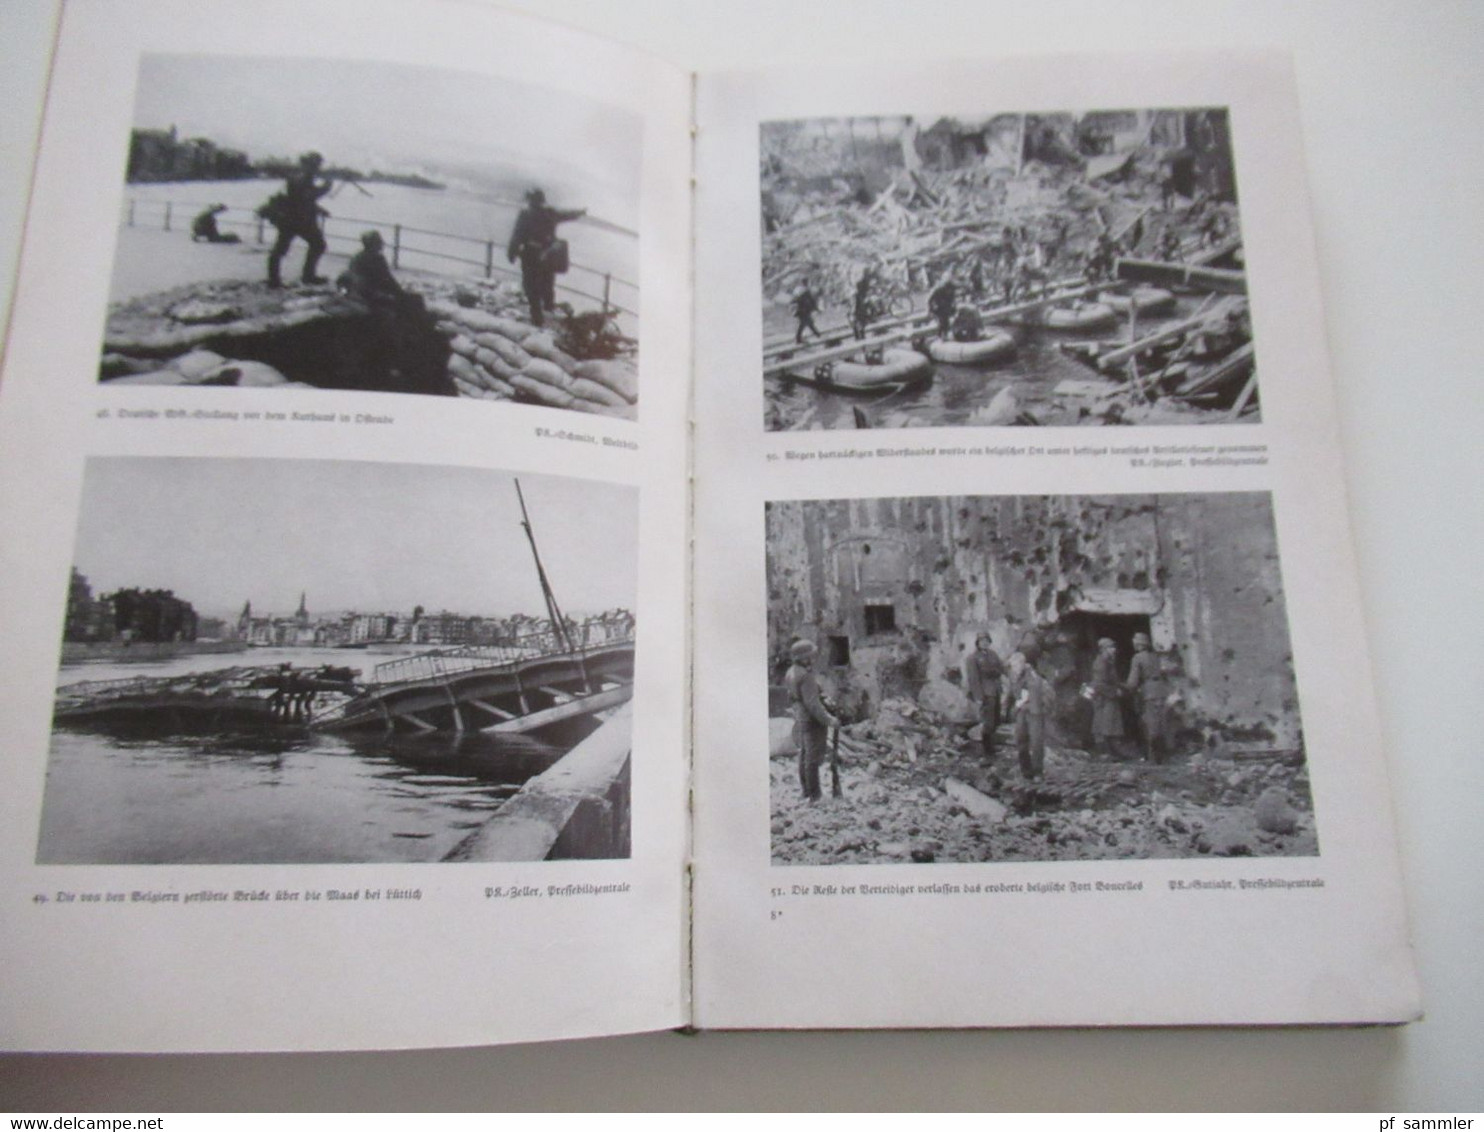 Unser Kampf in Holland, Belgien und Flandern vom 10. Mai bis 4. Juni 1940 mit einigen Bildern! 1941 / NS Propaganda